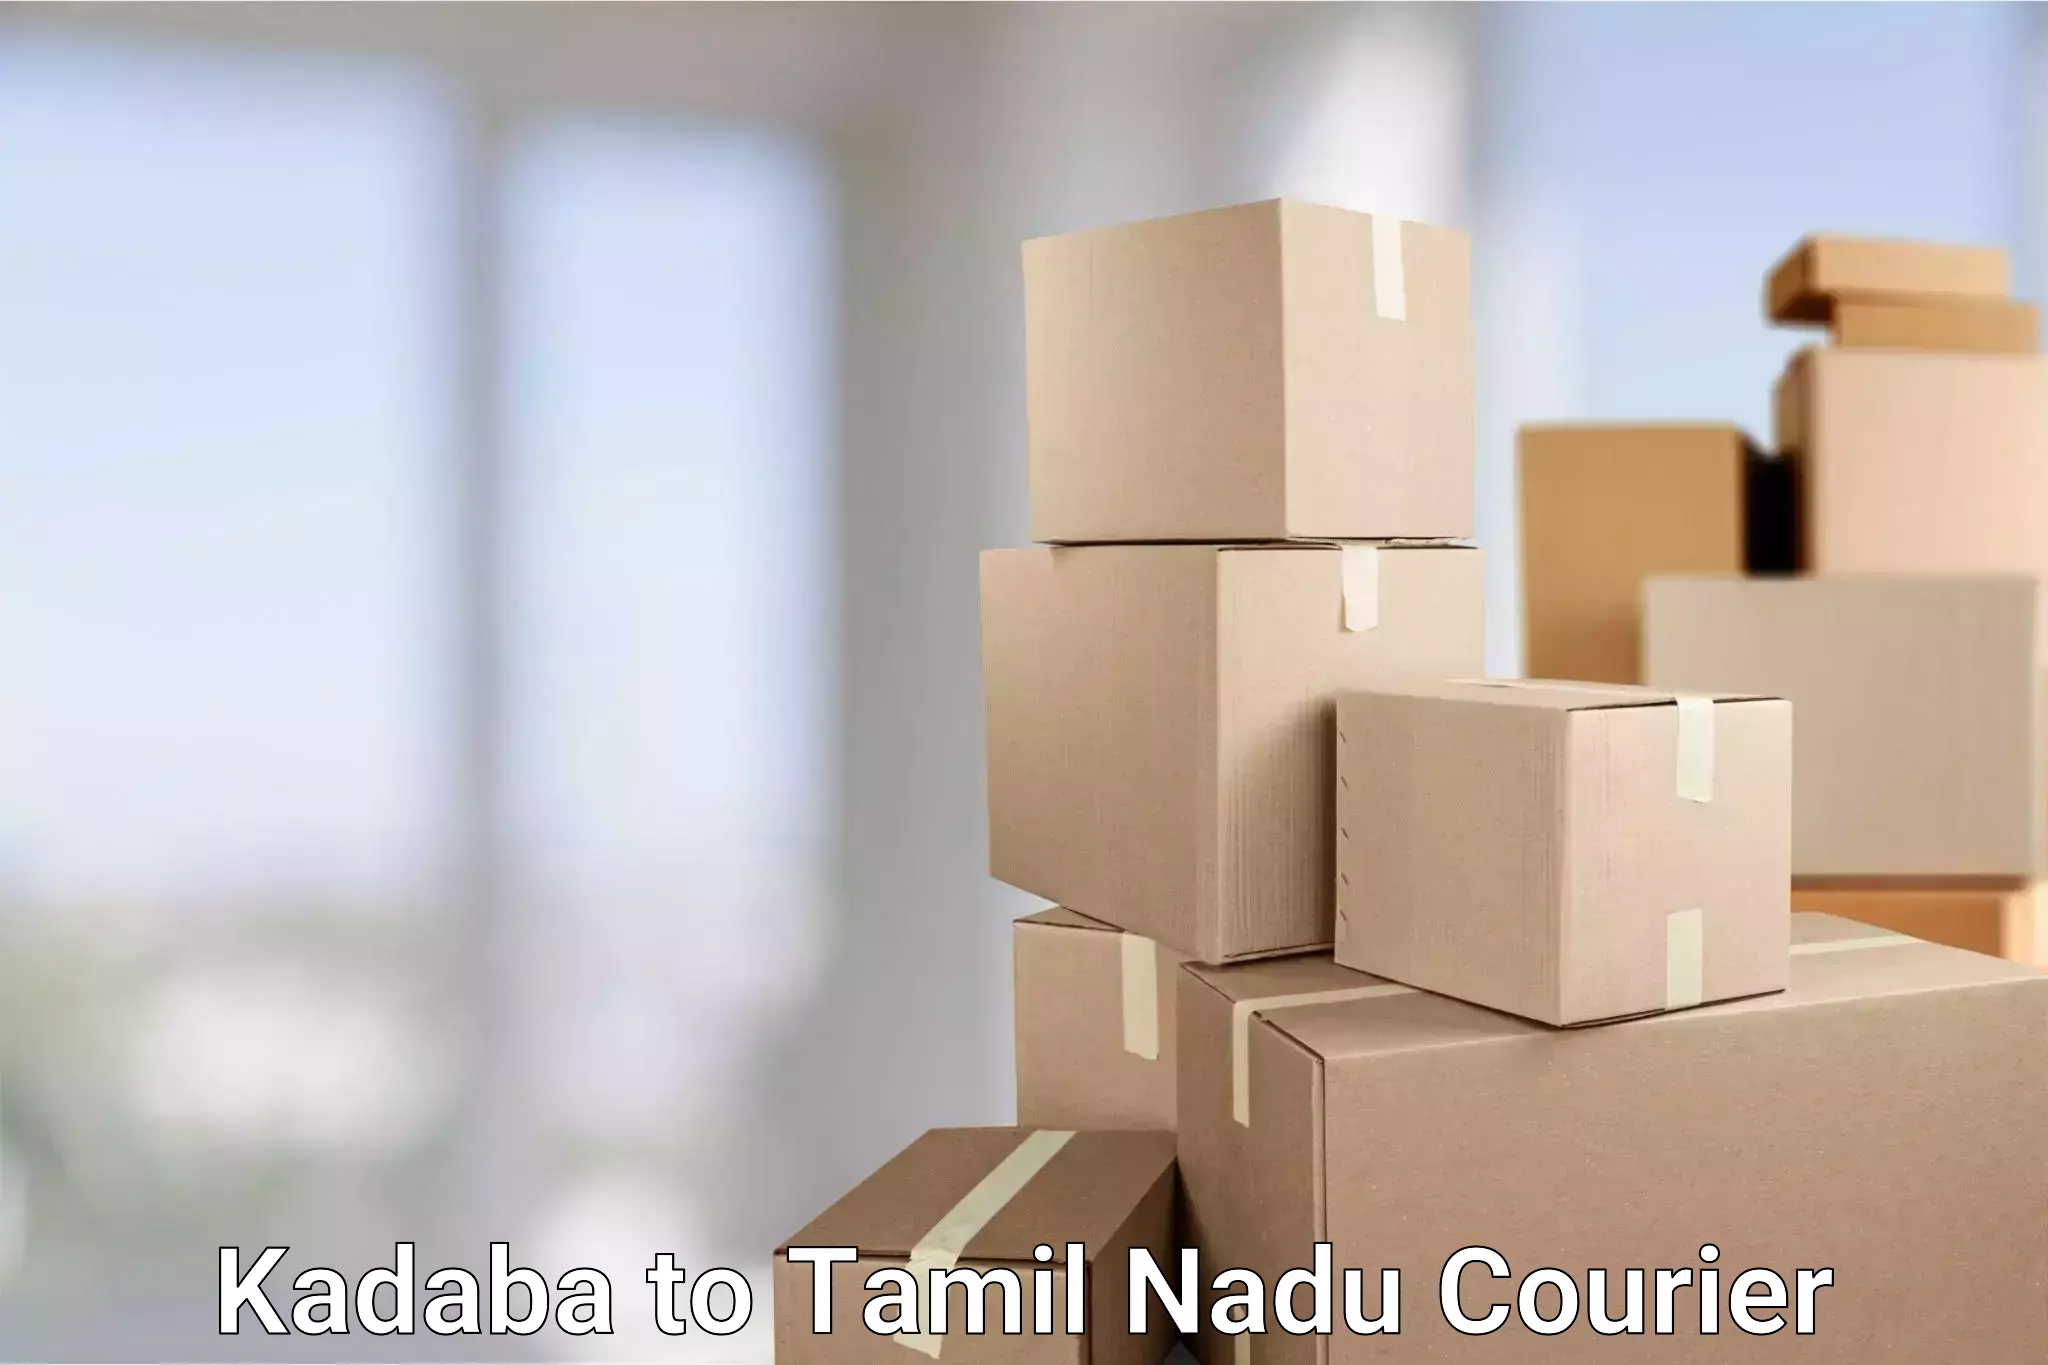 Speedy delivery service Kadaba to Tamil Nadu